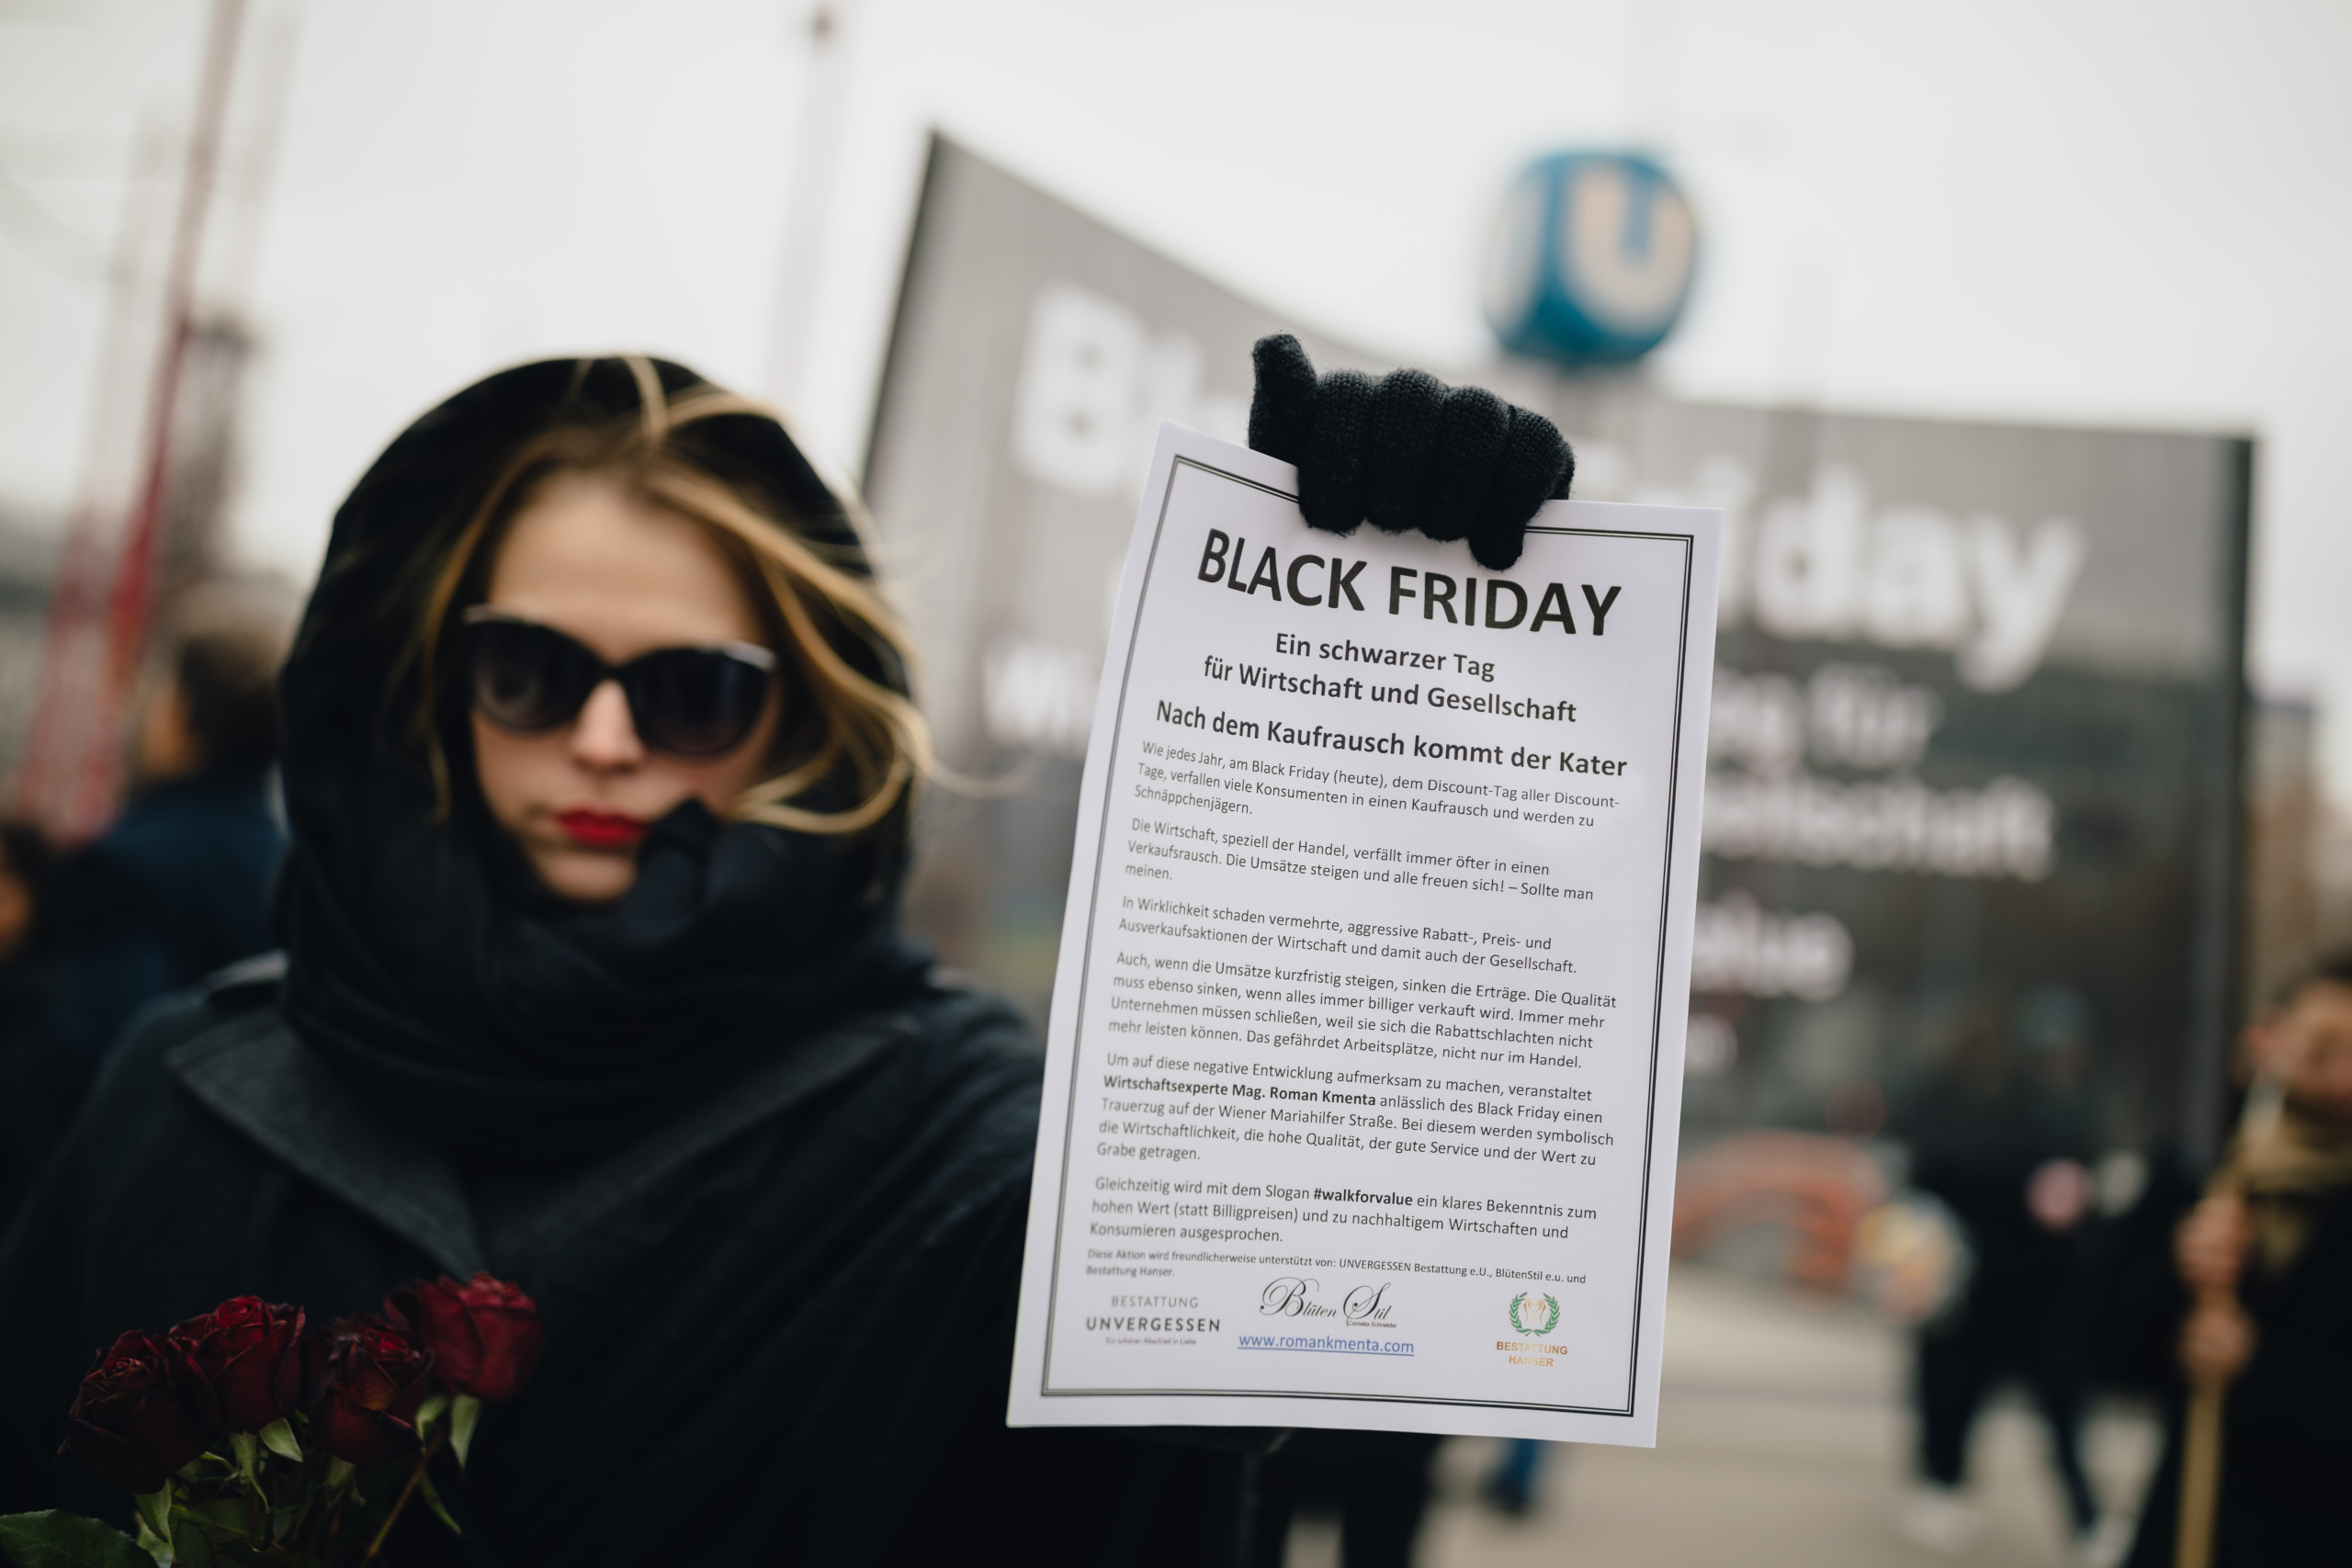 Trauerzug auf der Mariahilfer Straße - Mag. Roman Kmenta - Black Friday 2018